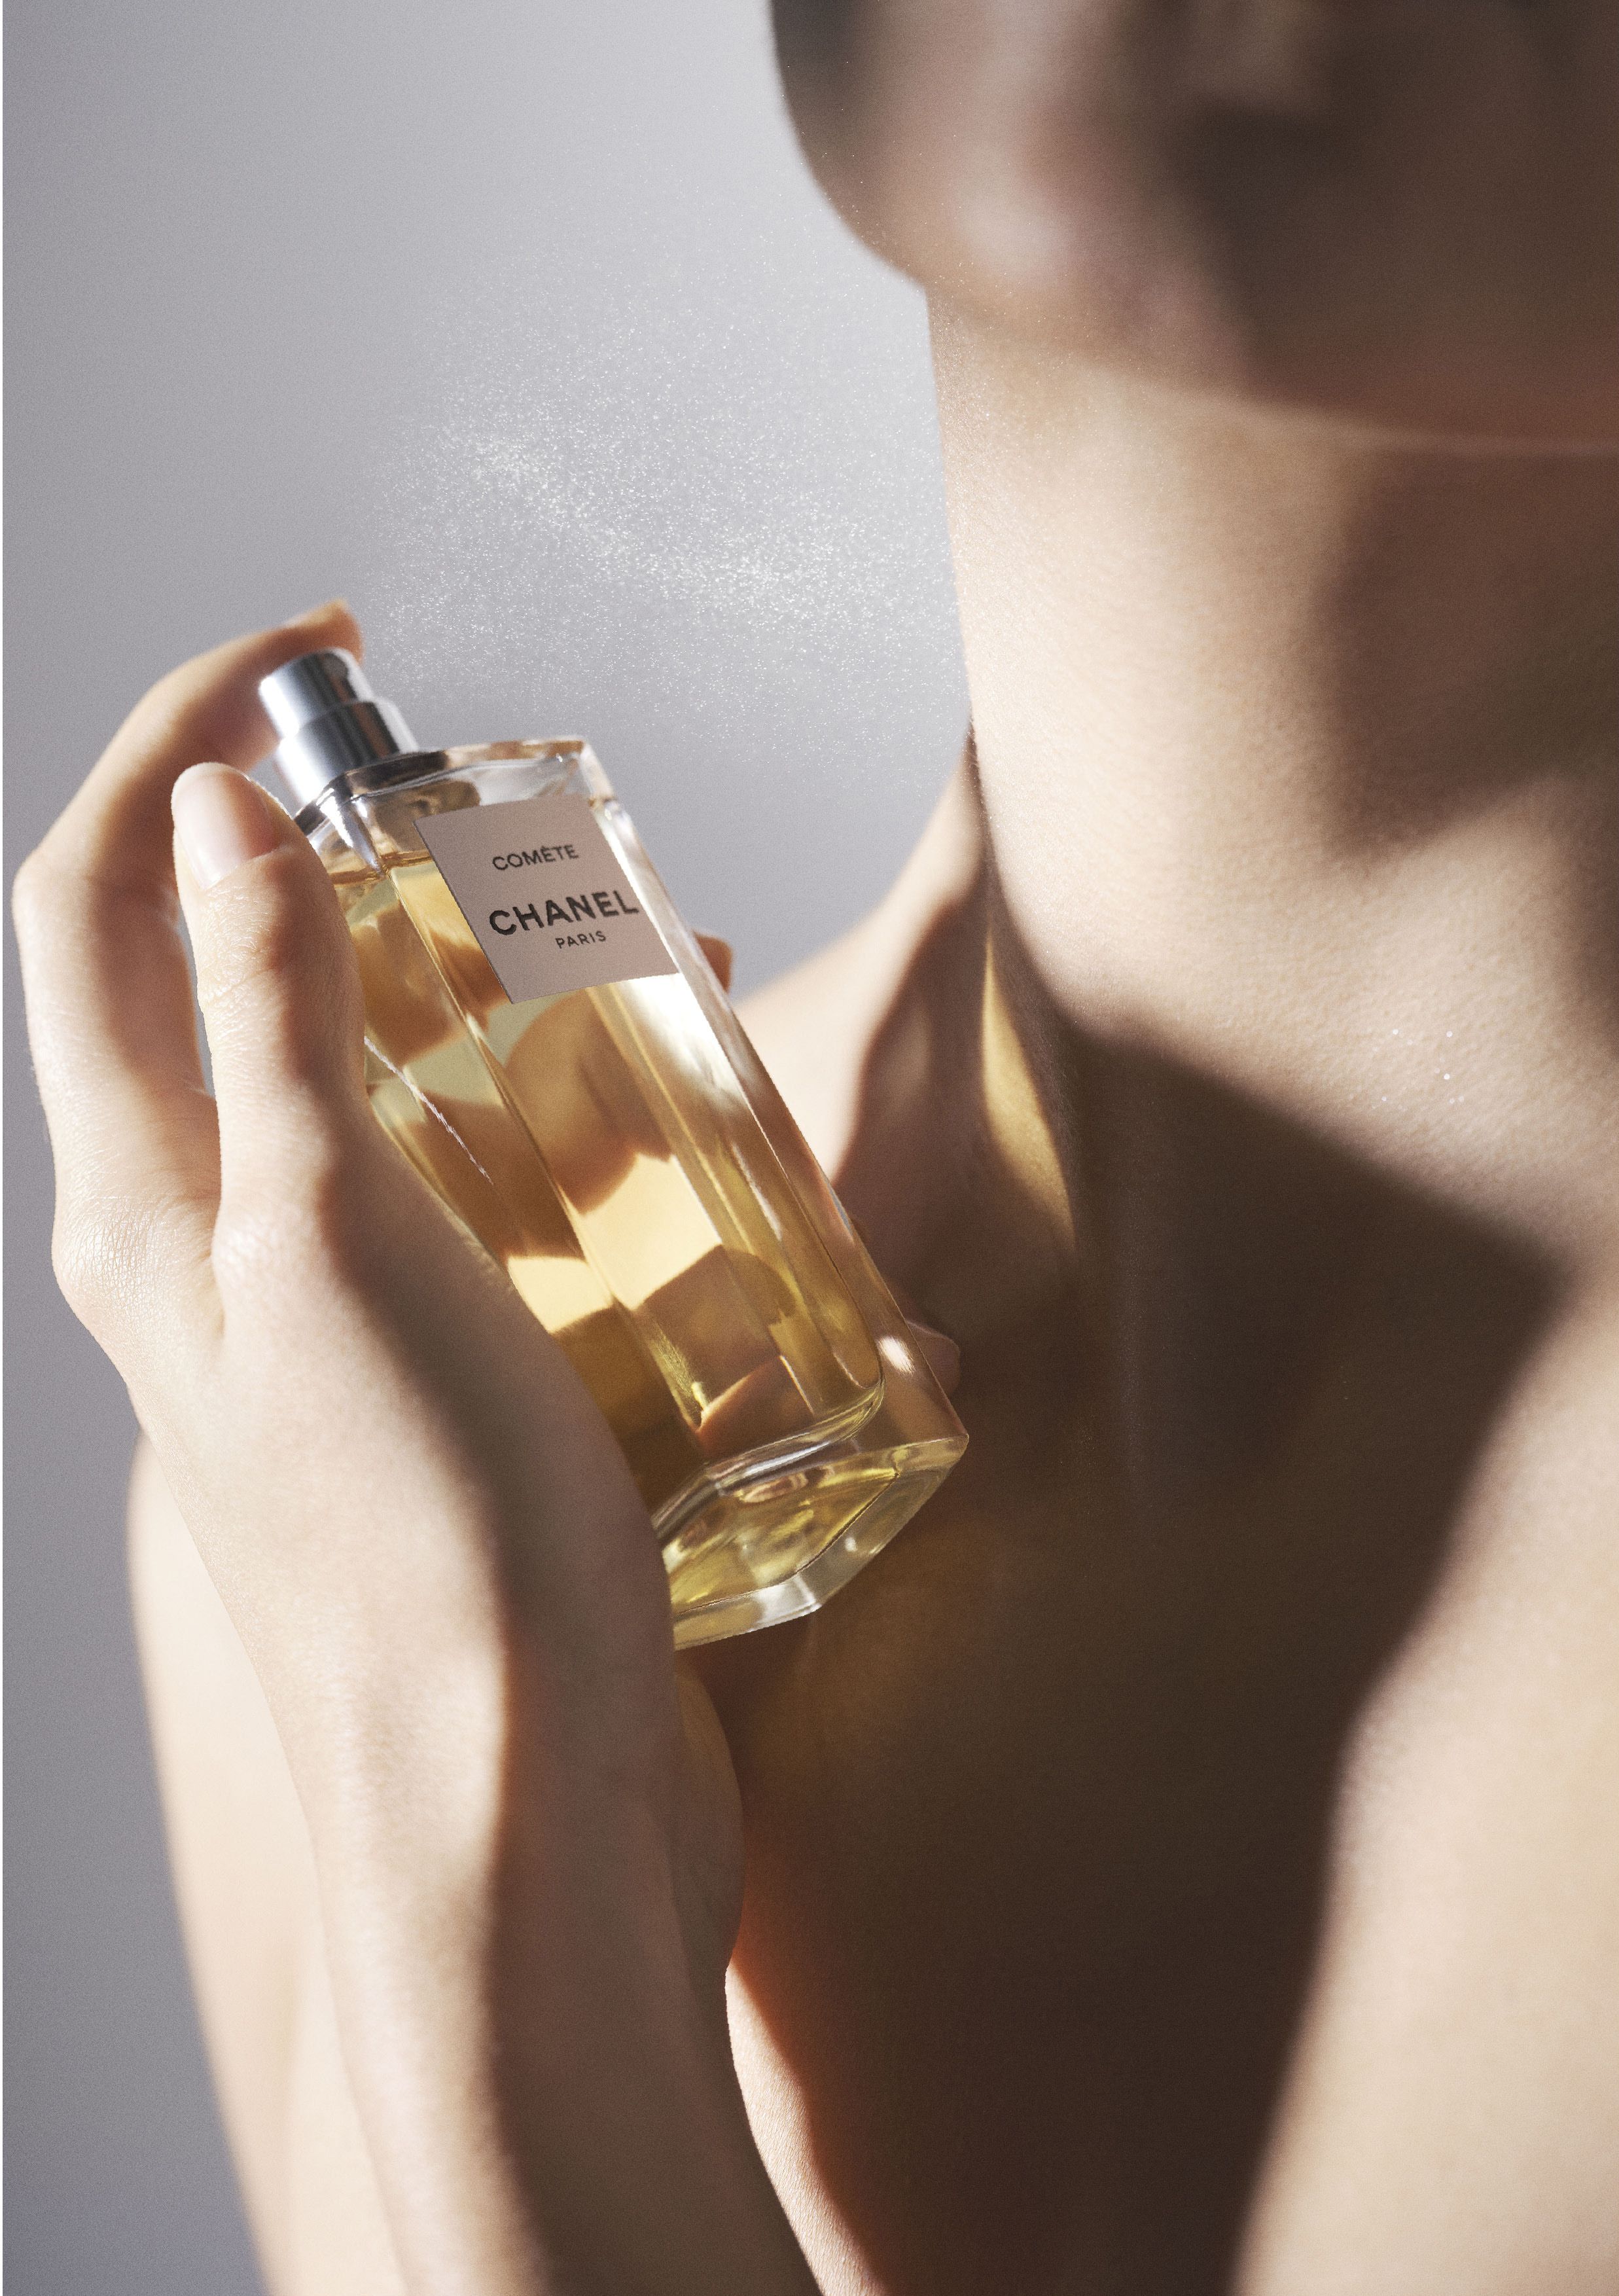 Chanel lasnirao novi parfem: Inspiriran je zvijezdama, no neočekivani cvijet dominira mirisom